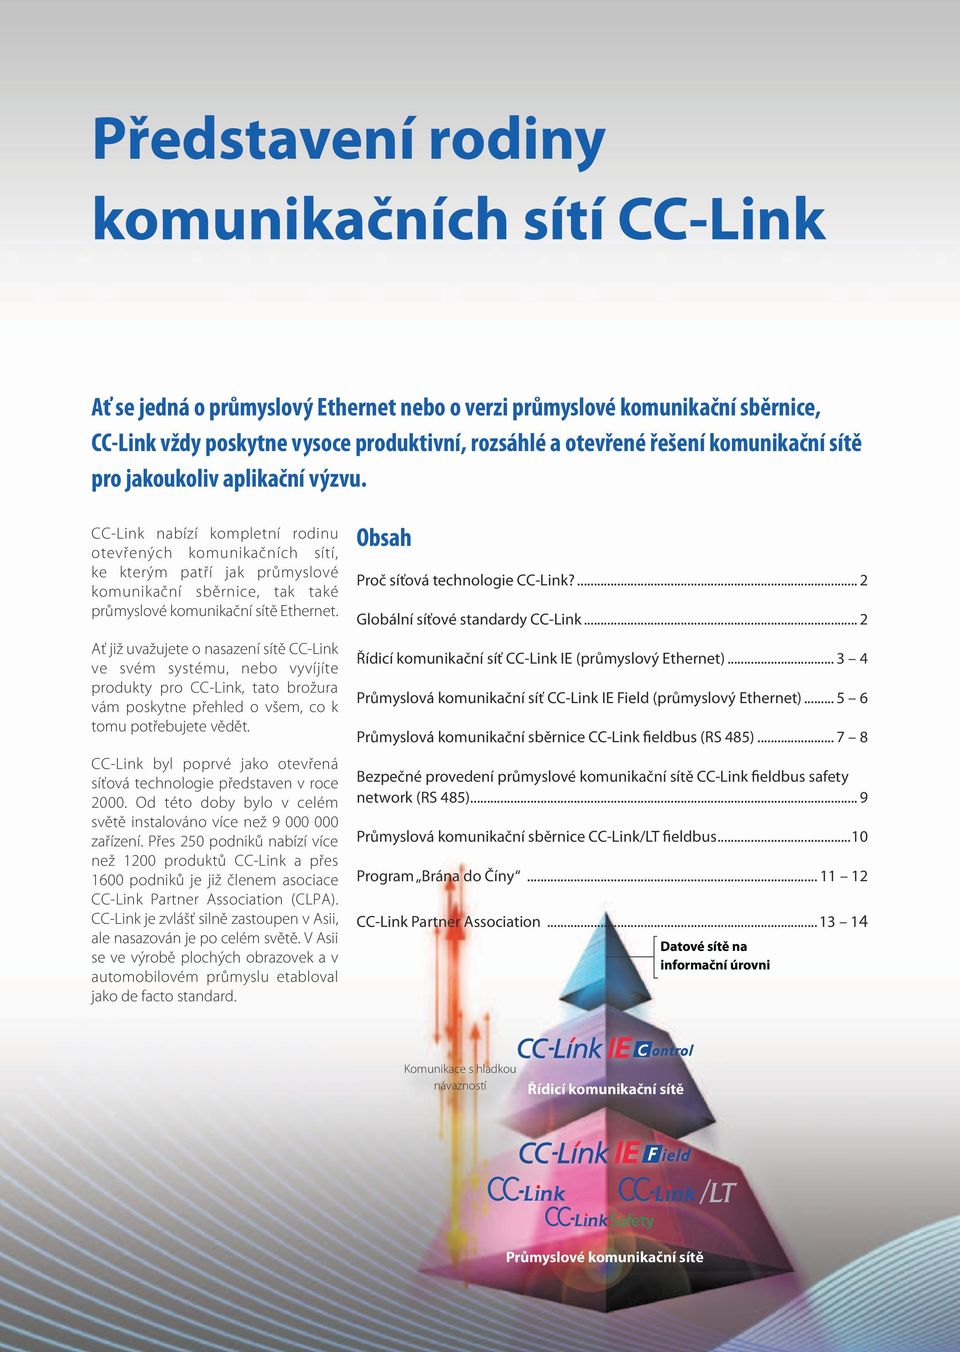 CC-Link nabízí kompletní rodinu otevřených komunikačních sítí, ke kterým patří jak průmyslové komunikační sběrnice, tak také průmyslové komunikační sítě Ethernet.